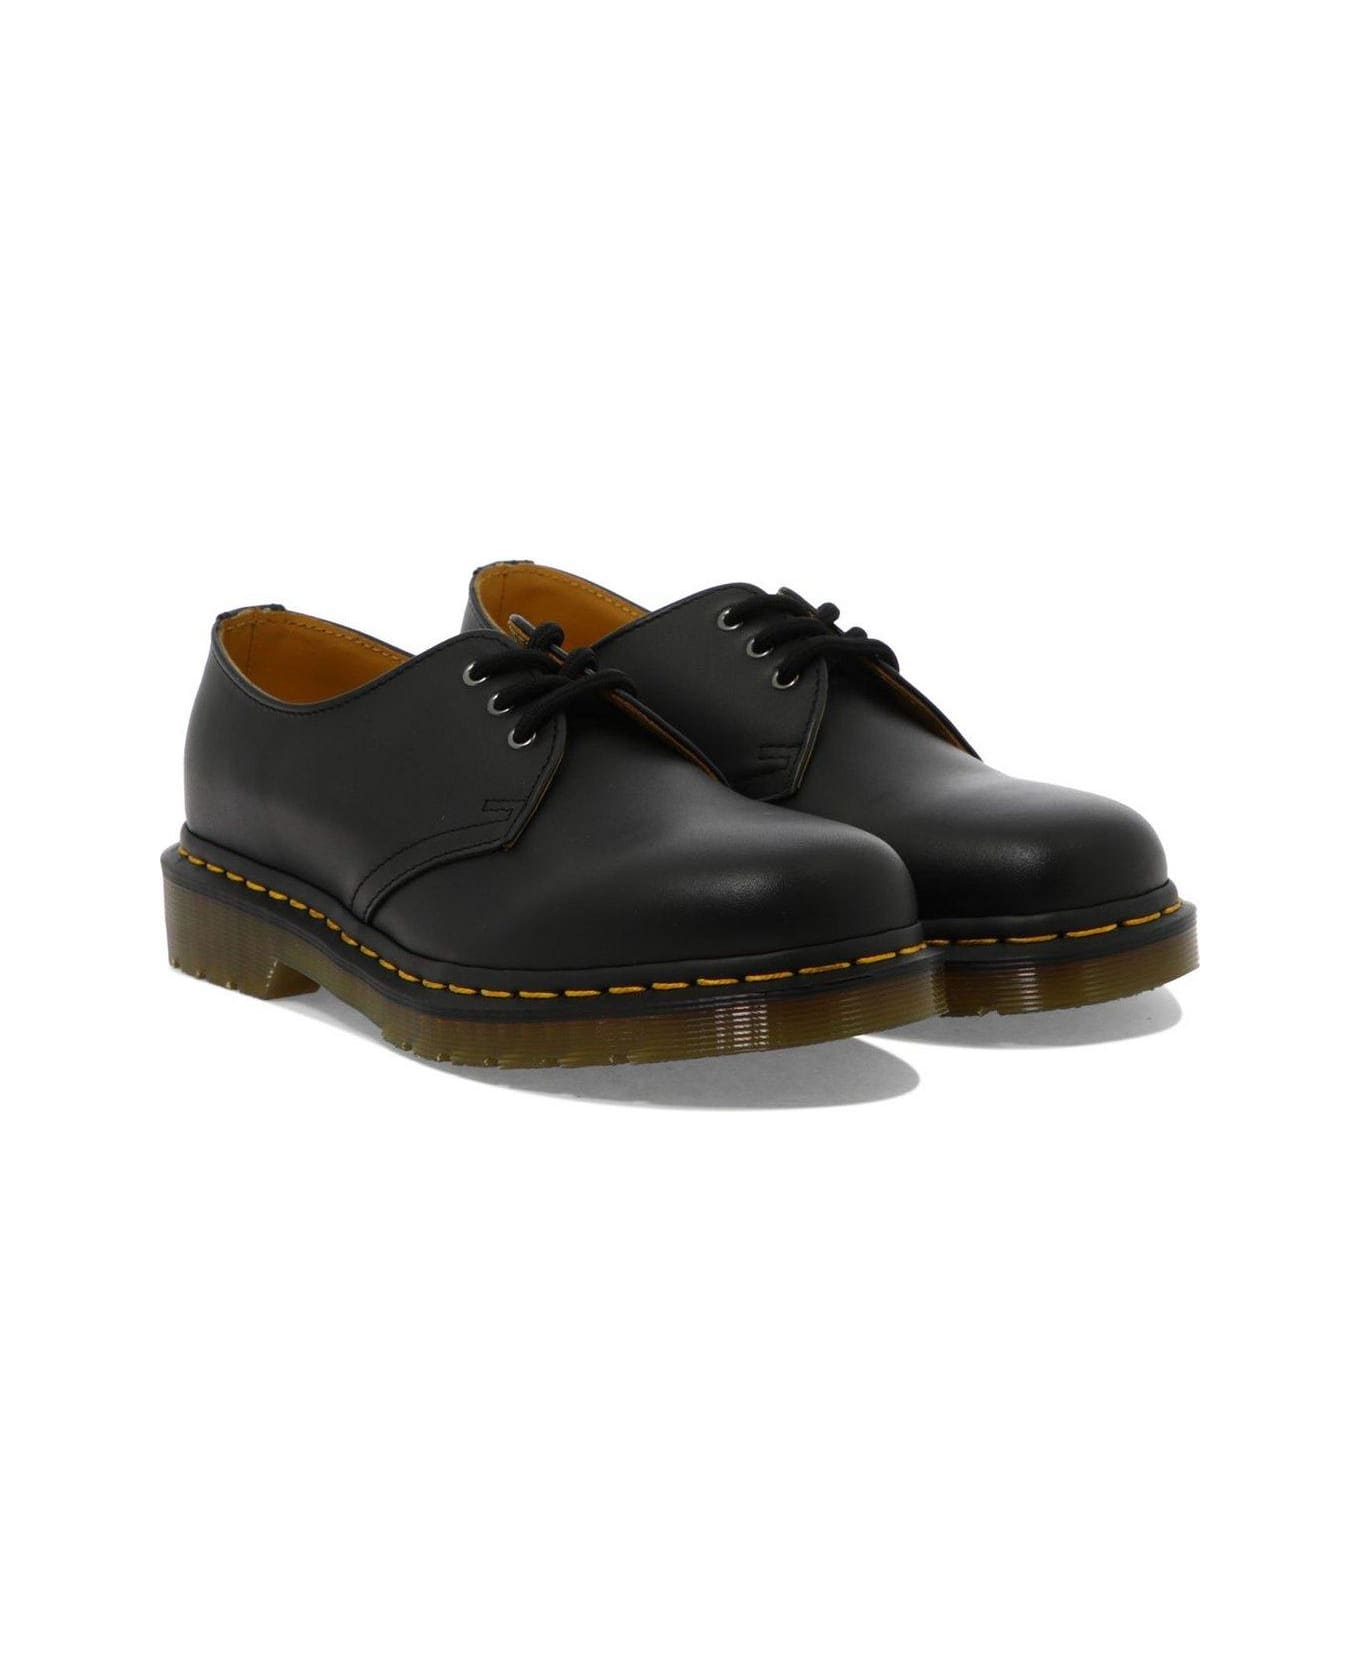 Dr. Martens 1461 Lace Up Shoes - Black フラットシューズ